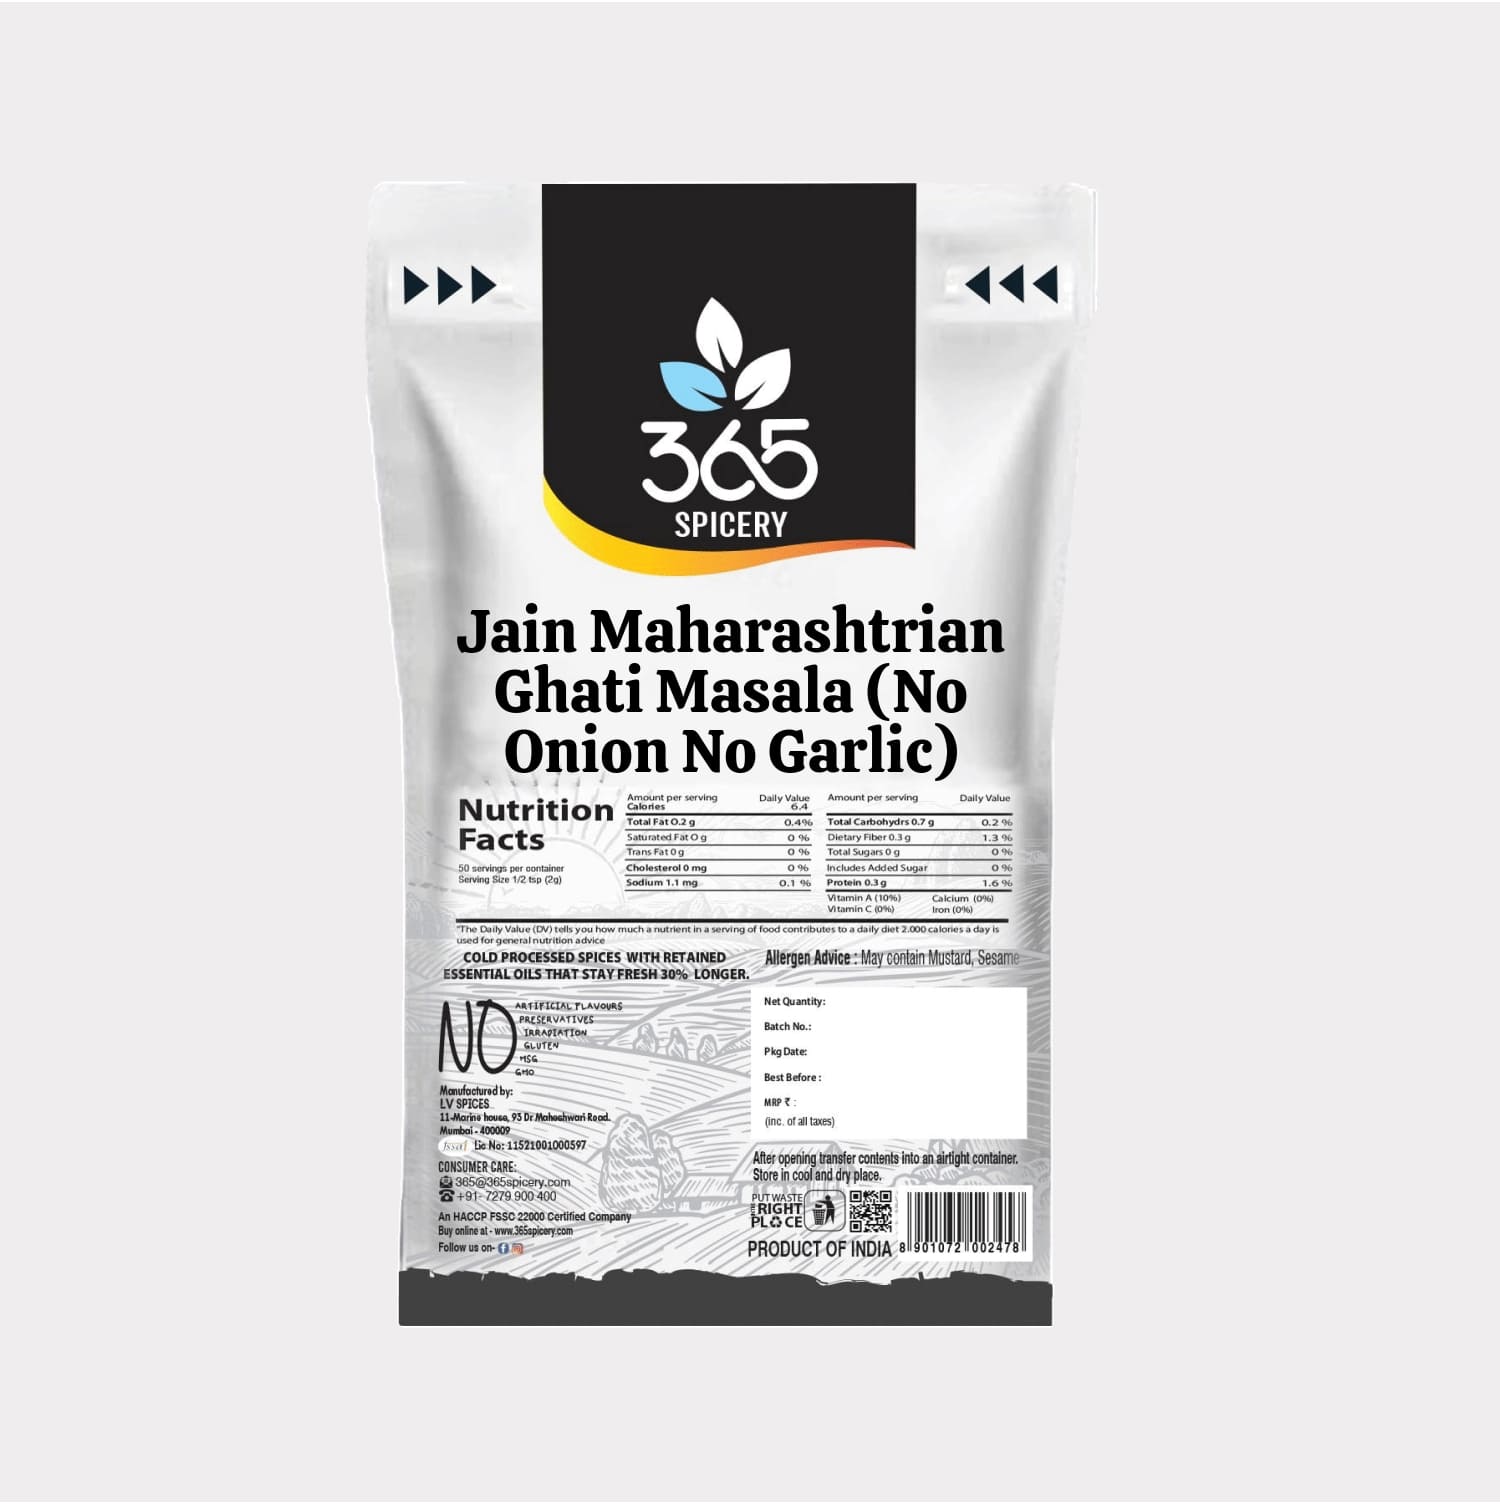 Jain Maharashtrian Ghati Masala (No Onion No Garlic)